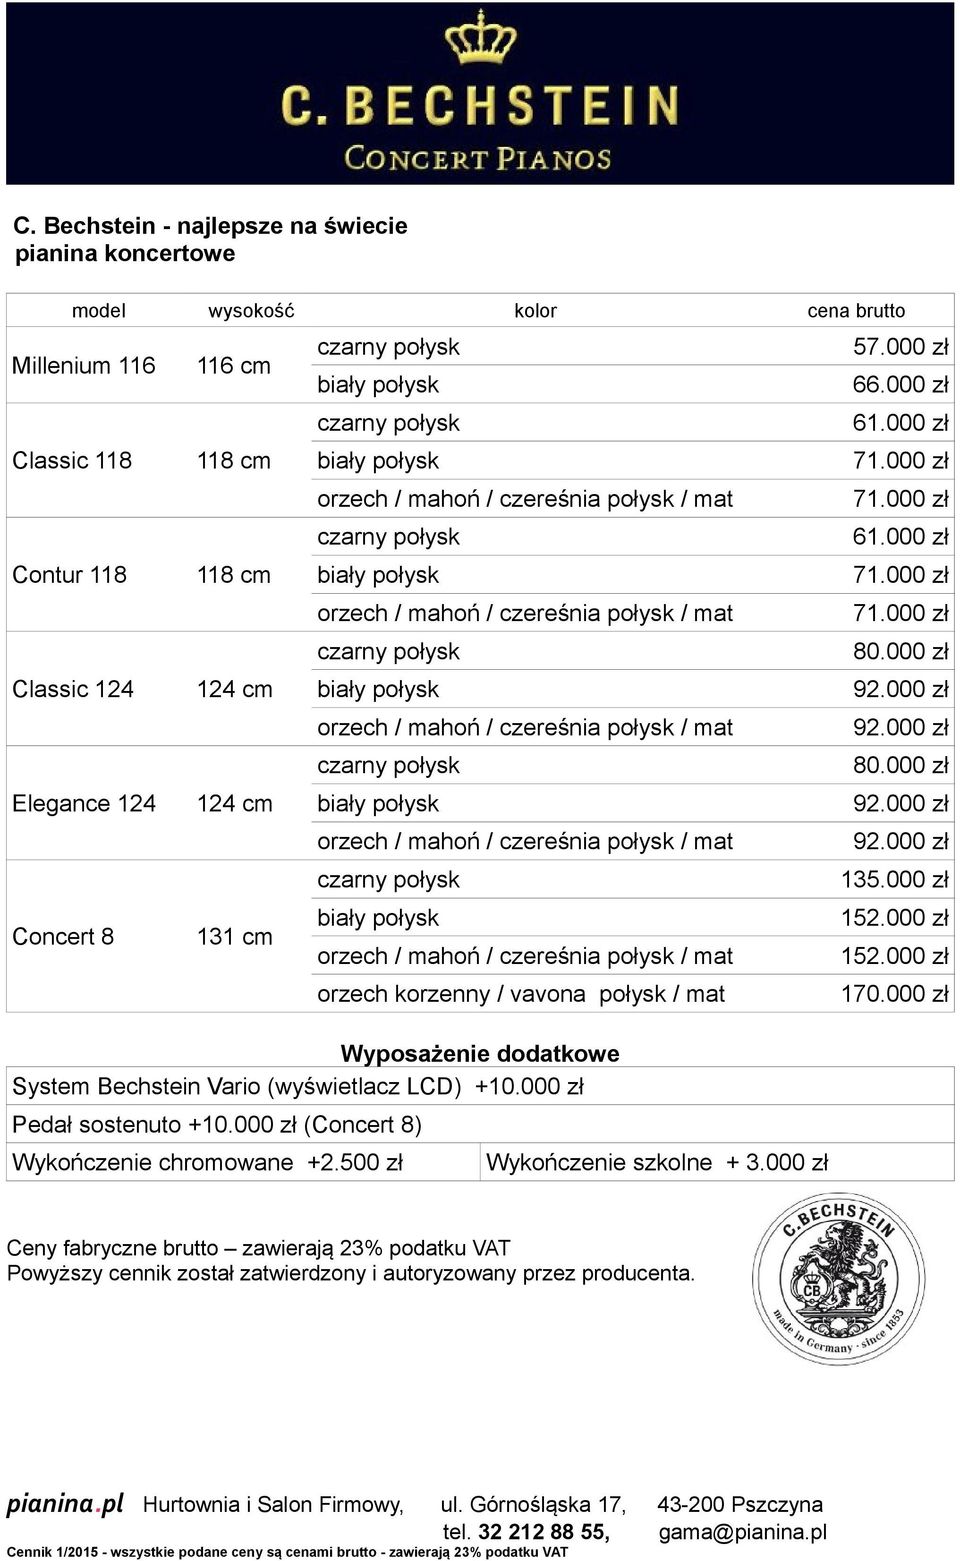 Bechstein Vario (wyświetlacz LCD) +10.000 zł Pedał sostenuto +10.000 zł (Concert 8) Wykończenie chromowane +2.